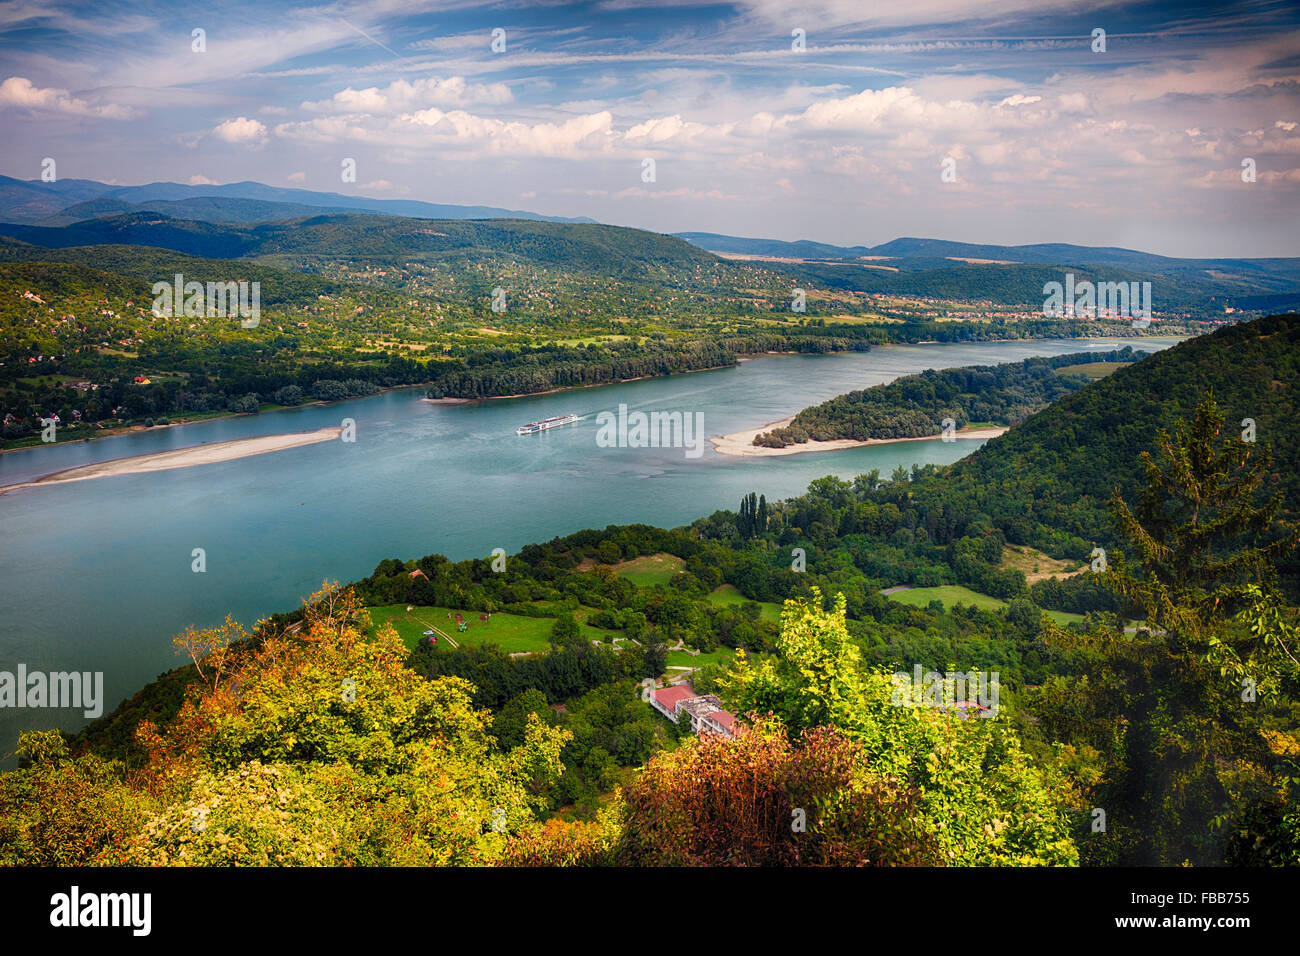 High Angle View der Donau mit Inseln und einem Kreuzfahrtschiff, Visegrad, Komitat Pest, Ungarn Stockfoto